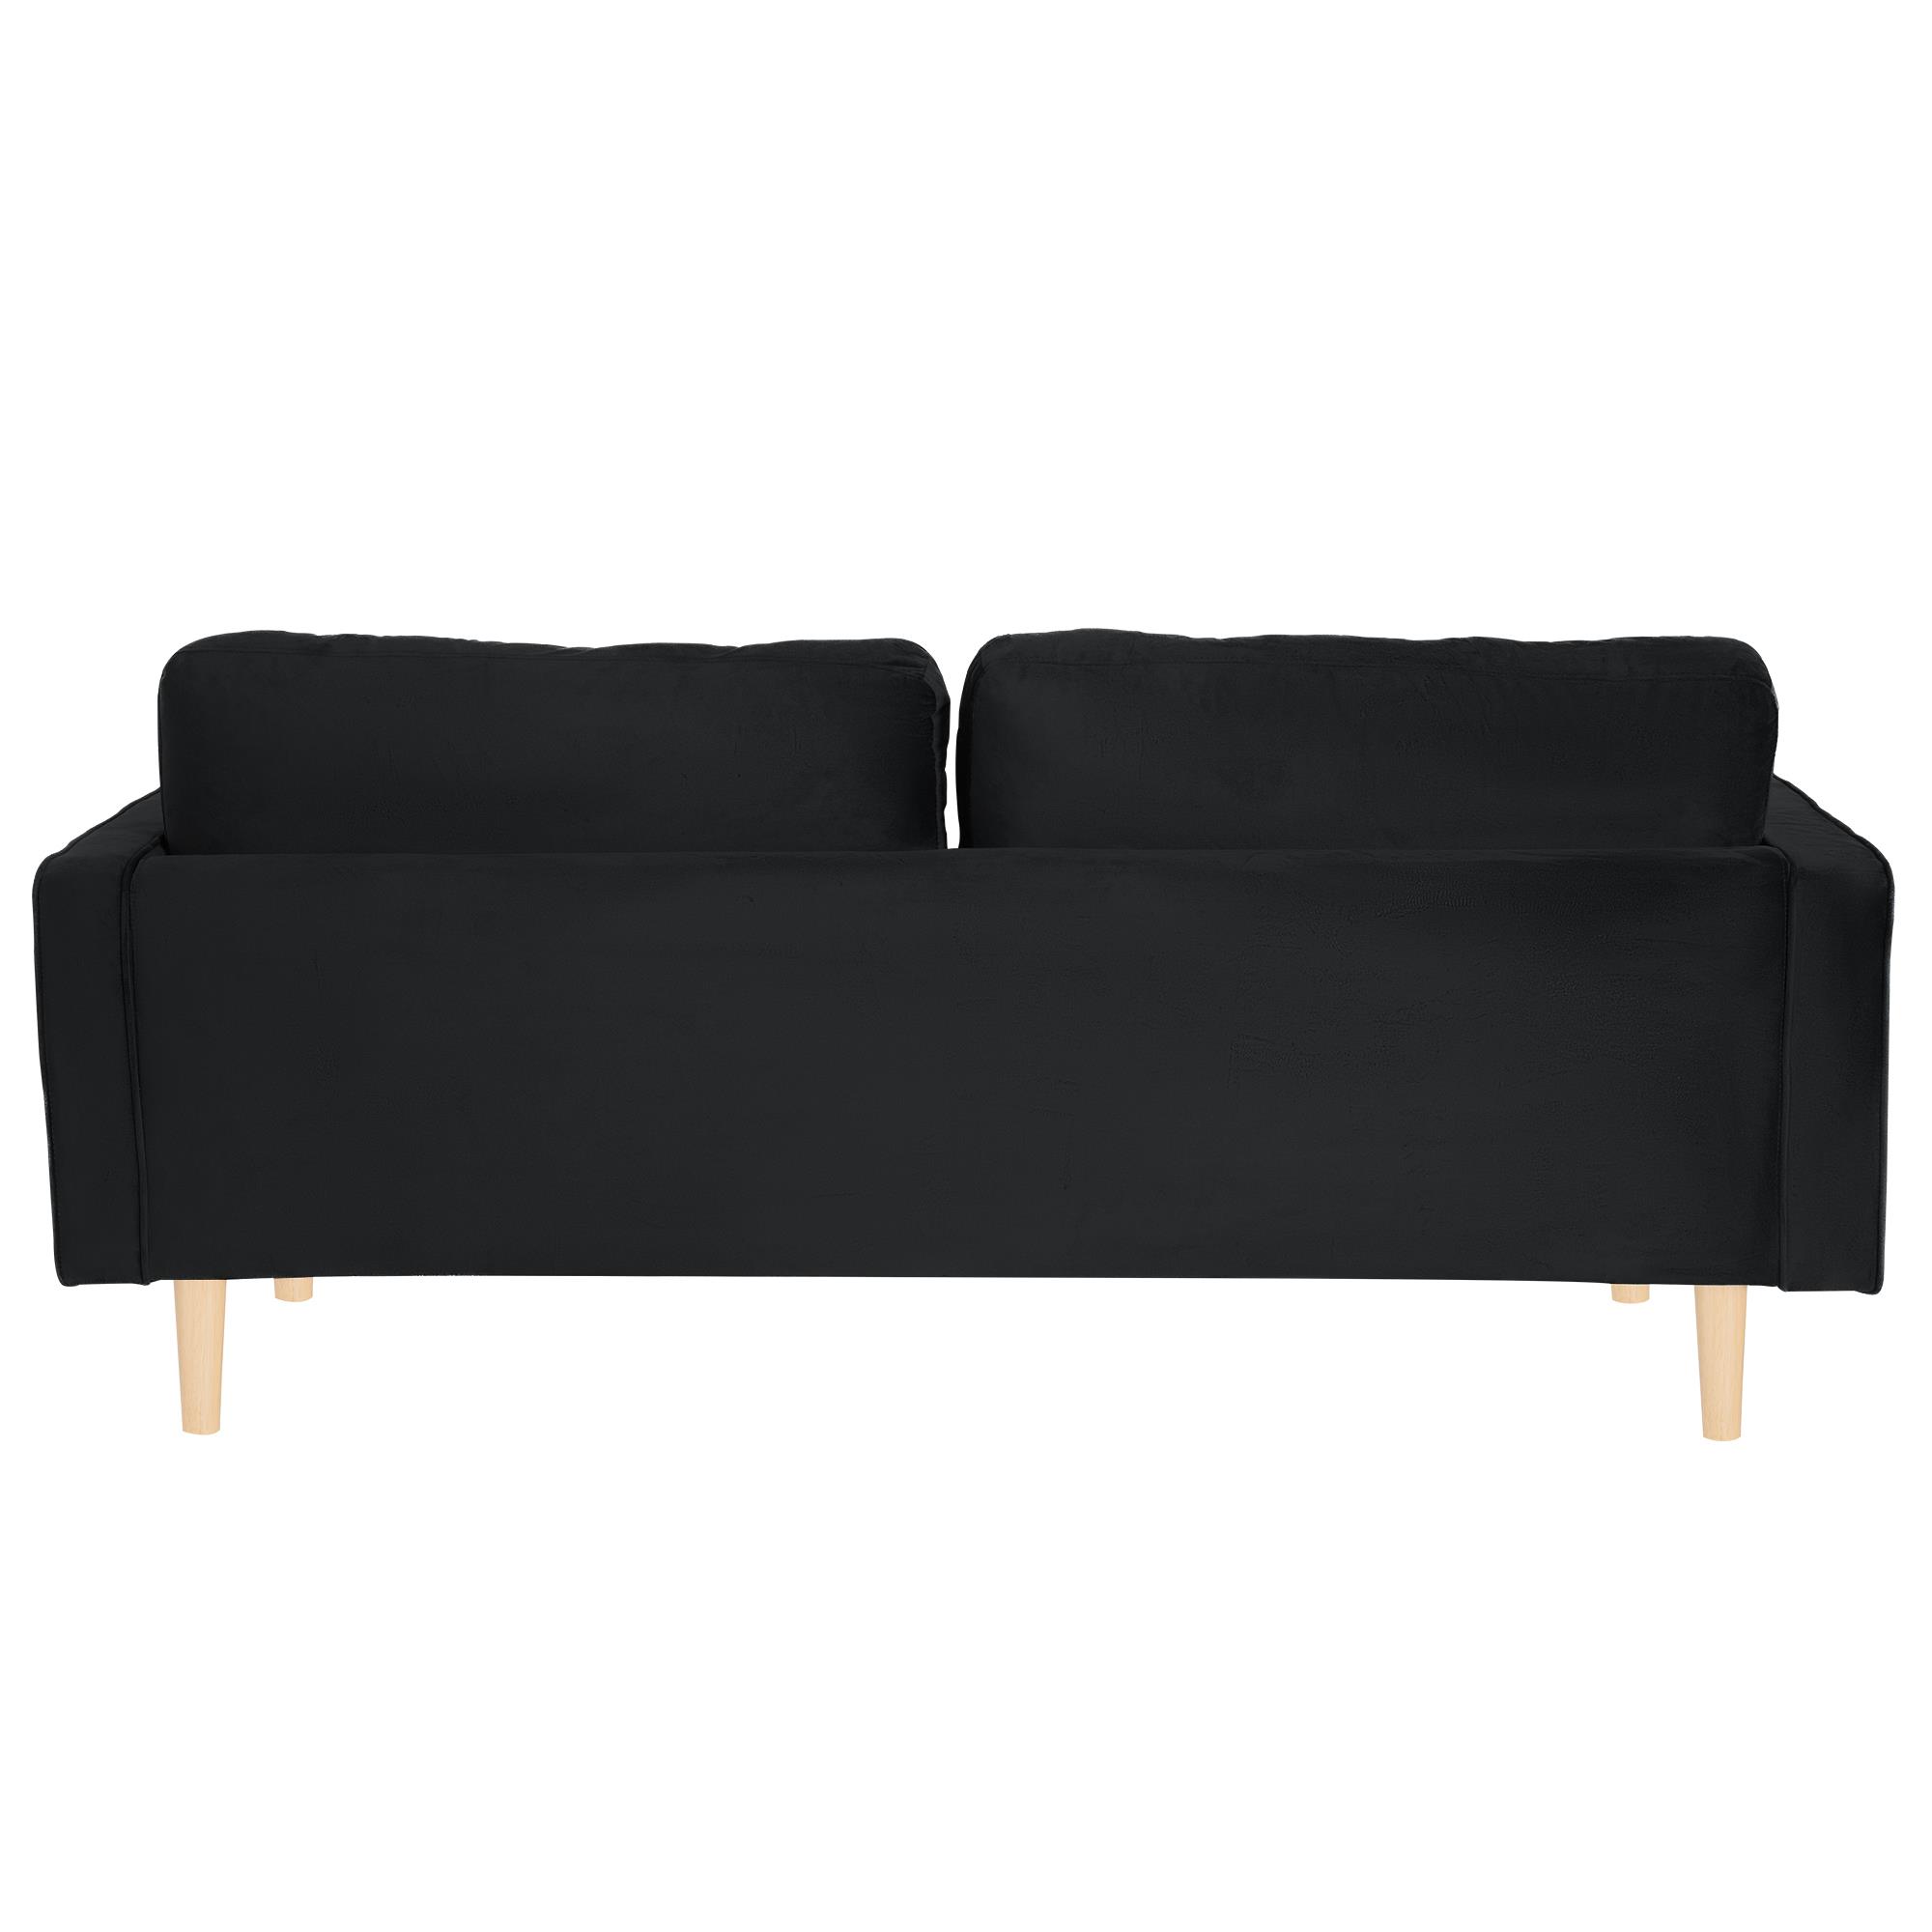 ספה תלת מושבית דגם סונטה צבע שחור